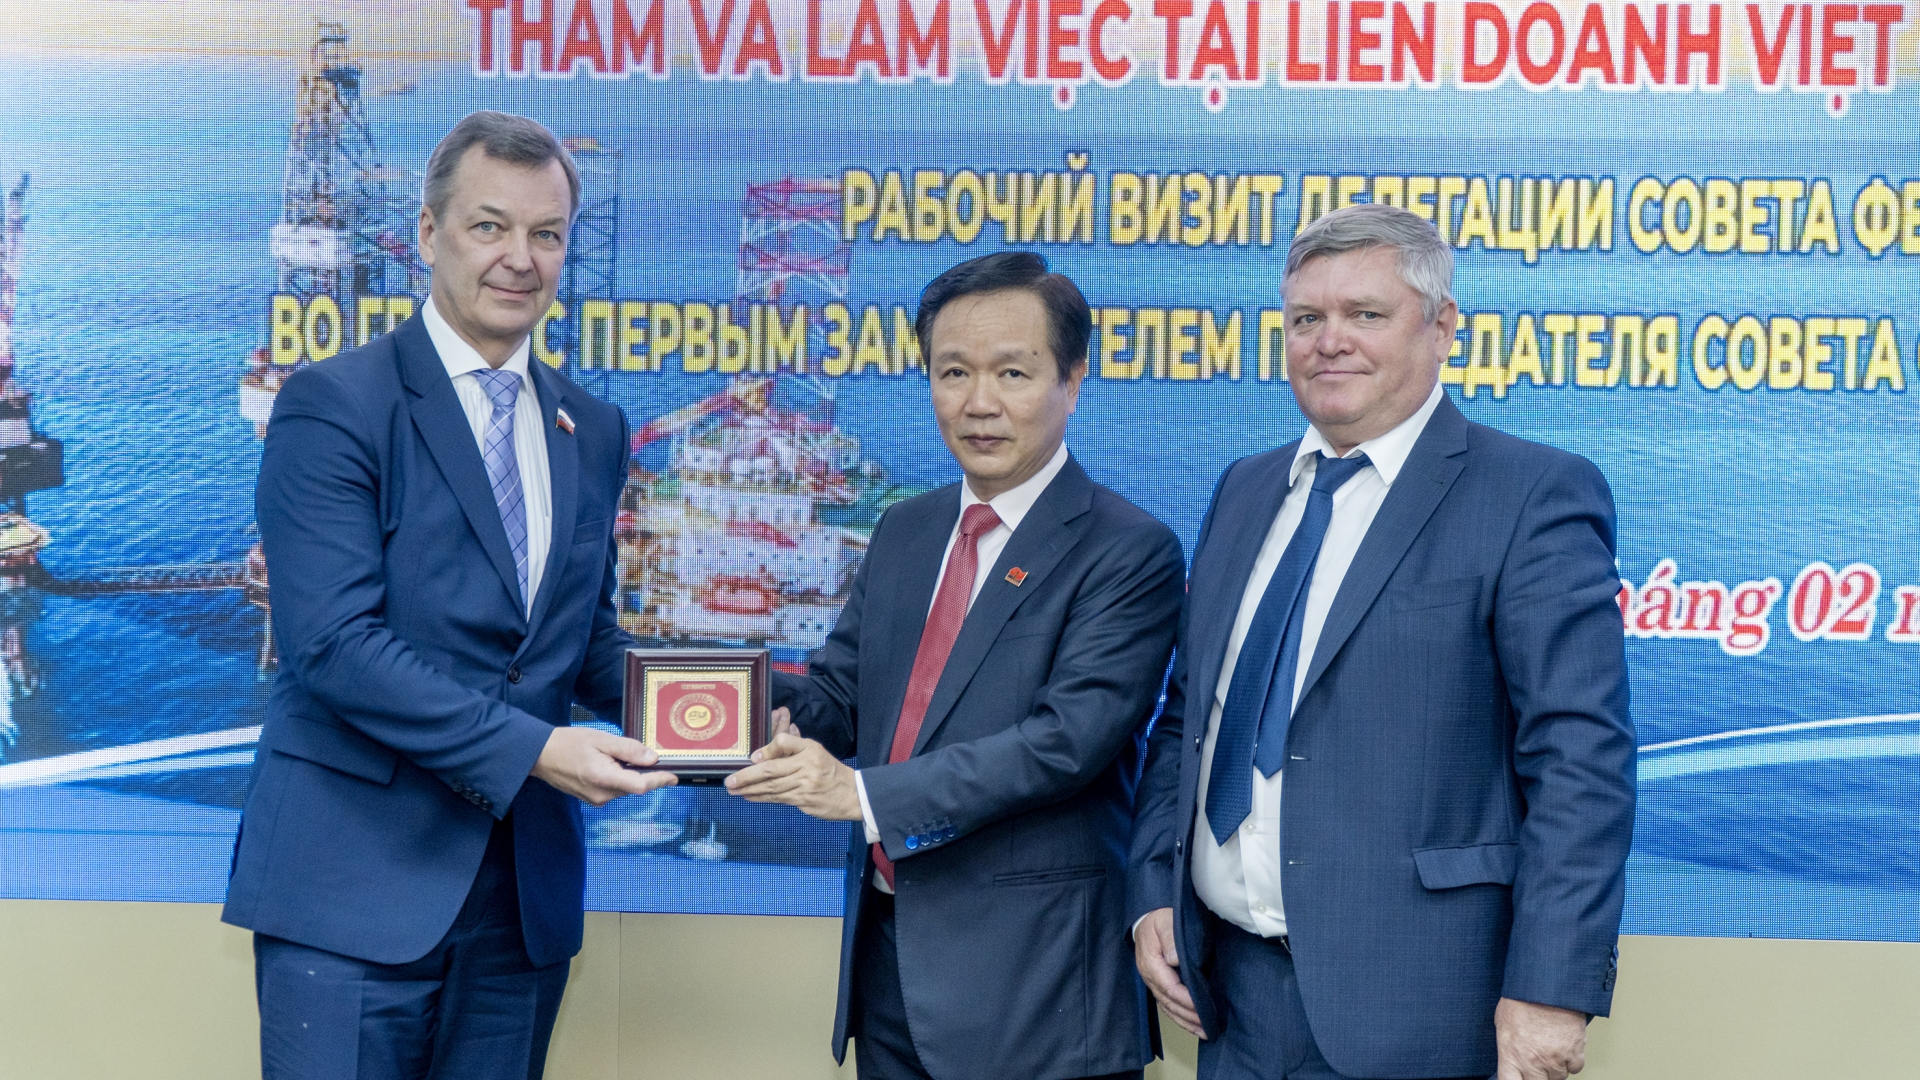 越俄油气联营公司代表向代表团赠送纪念品。